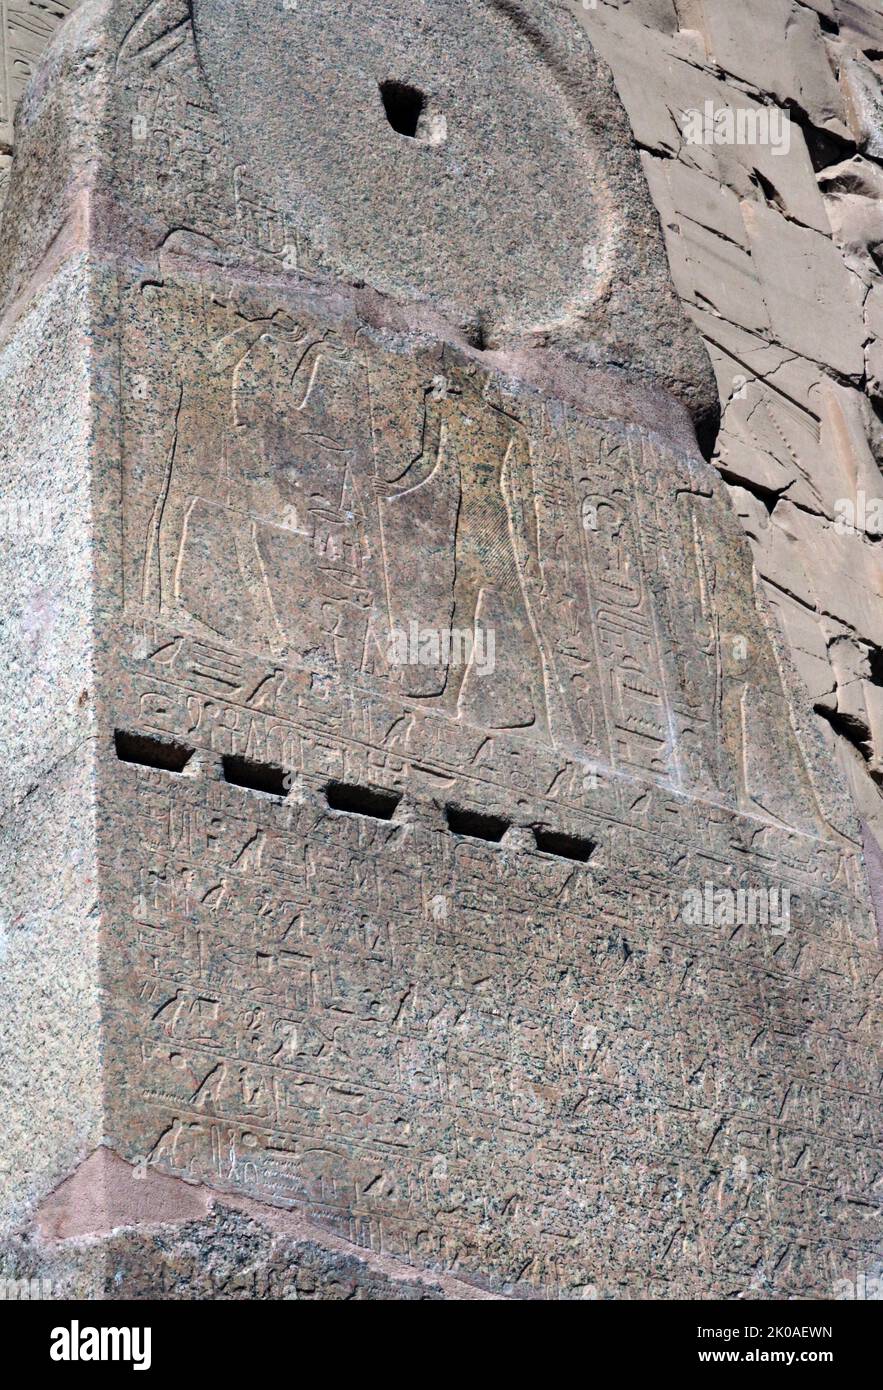 Stèle du règne de Menmaatre Seti I, décrivant ses victoires militaires. 19th dynastie, Temple de Karnak, Égypte, découverte en 2020. SETI était le deuxième pharaon de la dix-neuvième dynastie d'Égypte, pendant la période du Nouveau Royaume, régnant vers 1294 ou 1290 BC à 1279 BC. Il était le fils de Ramsès I et de Sitre, et le père de Ramsès II Banque D'Images